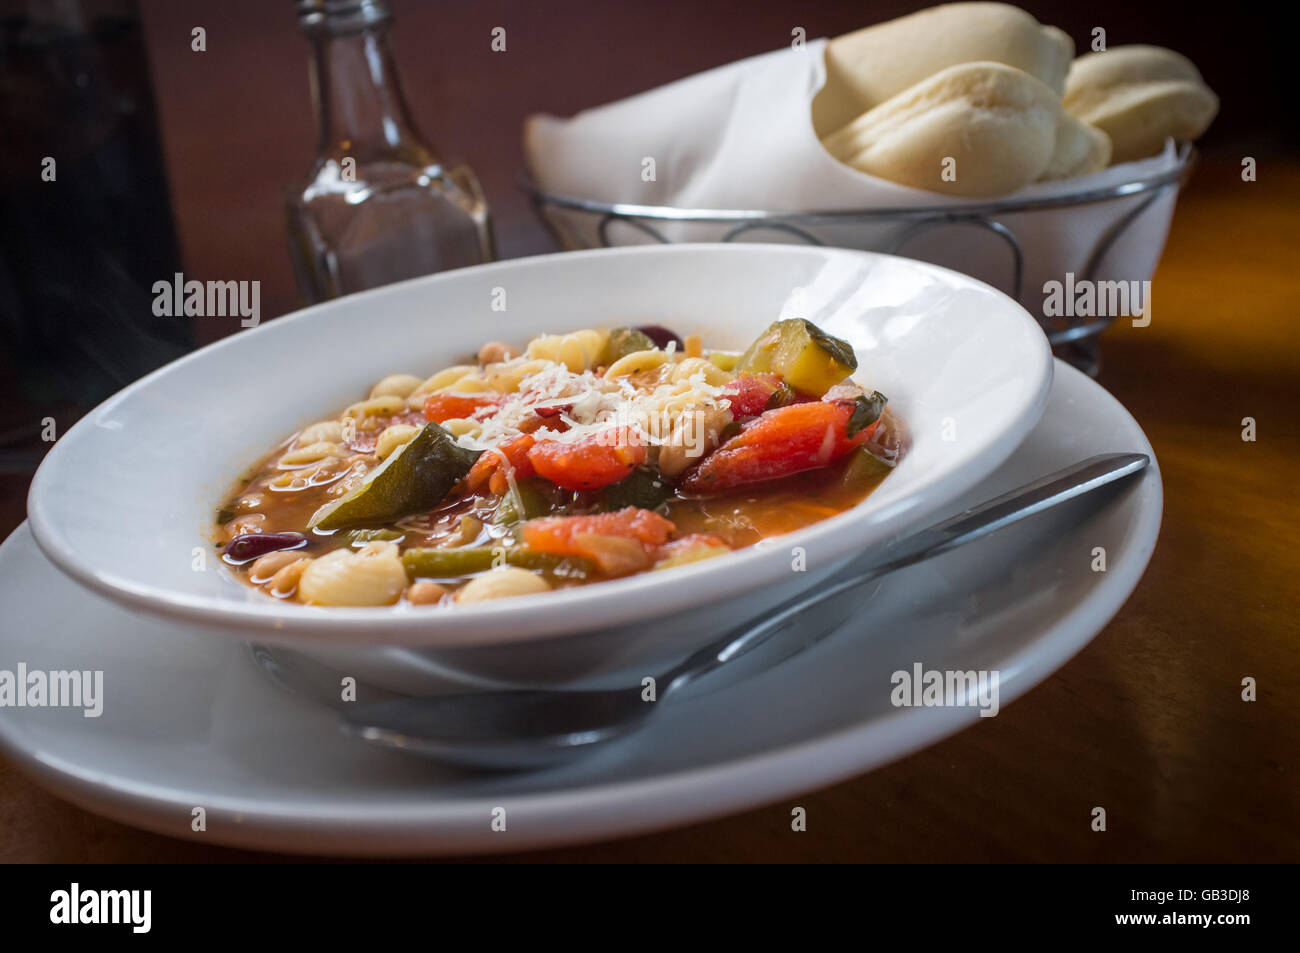 Herzhafte italienische Minestrone-Suppe mit Brot-sticks Stockfotografie ...